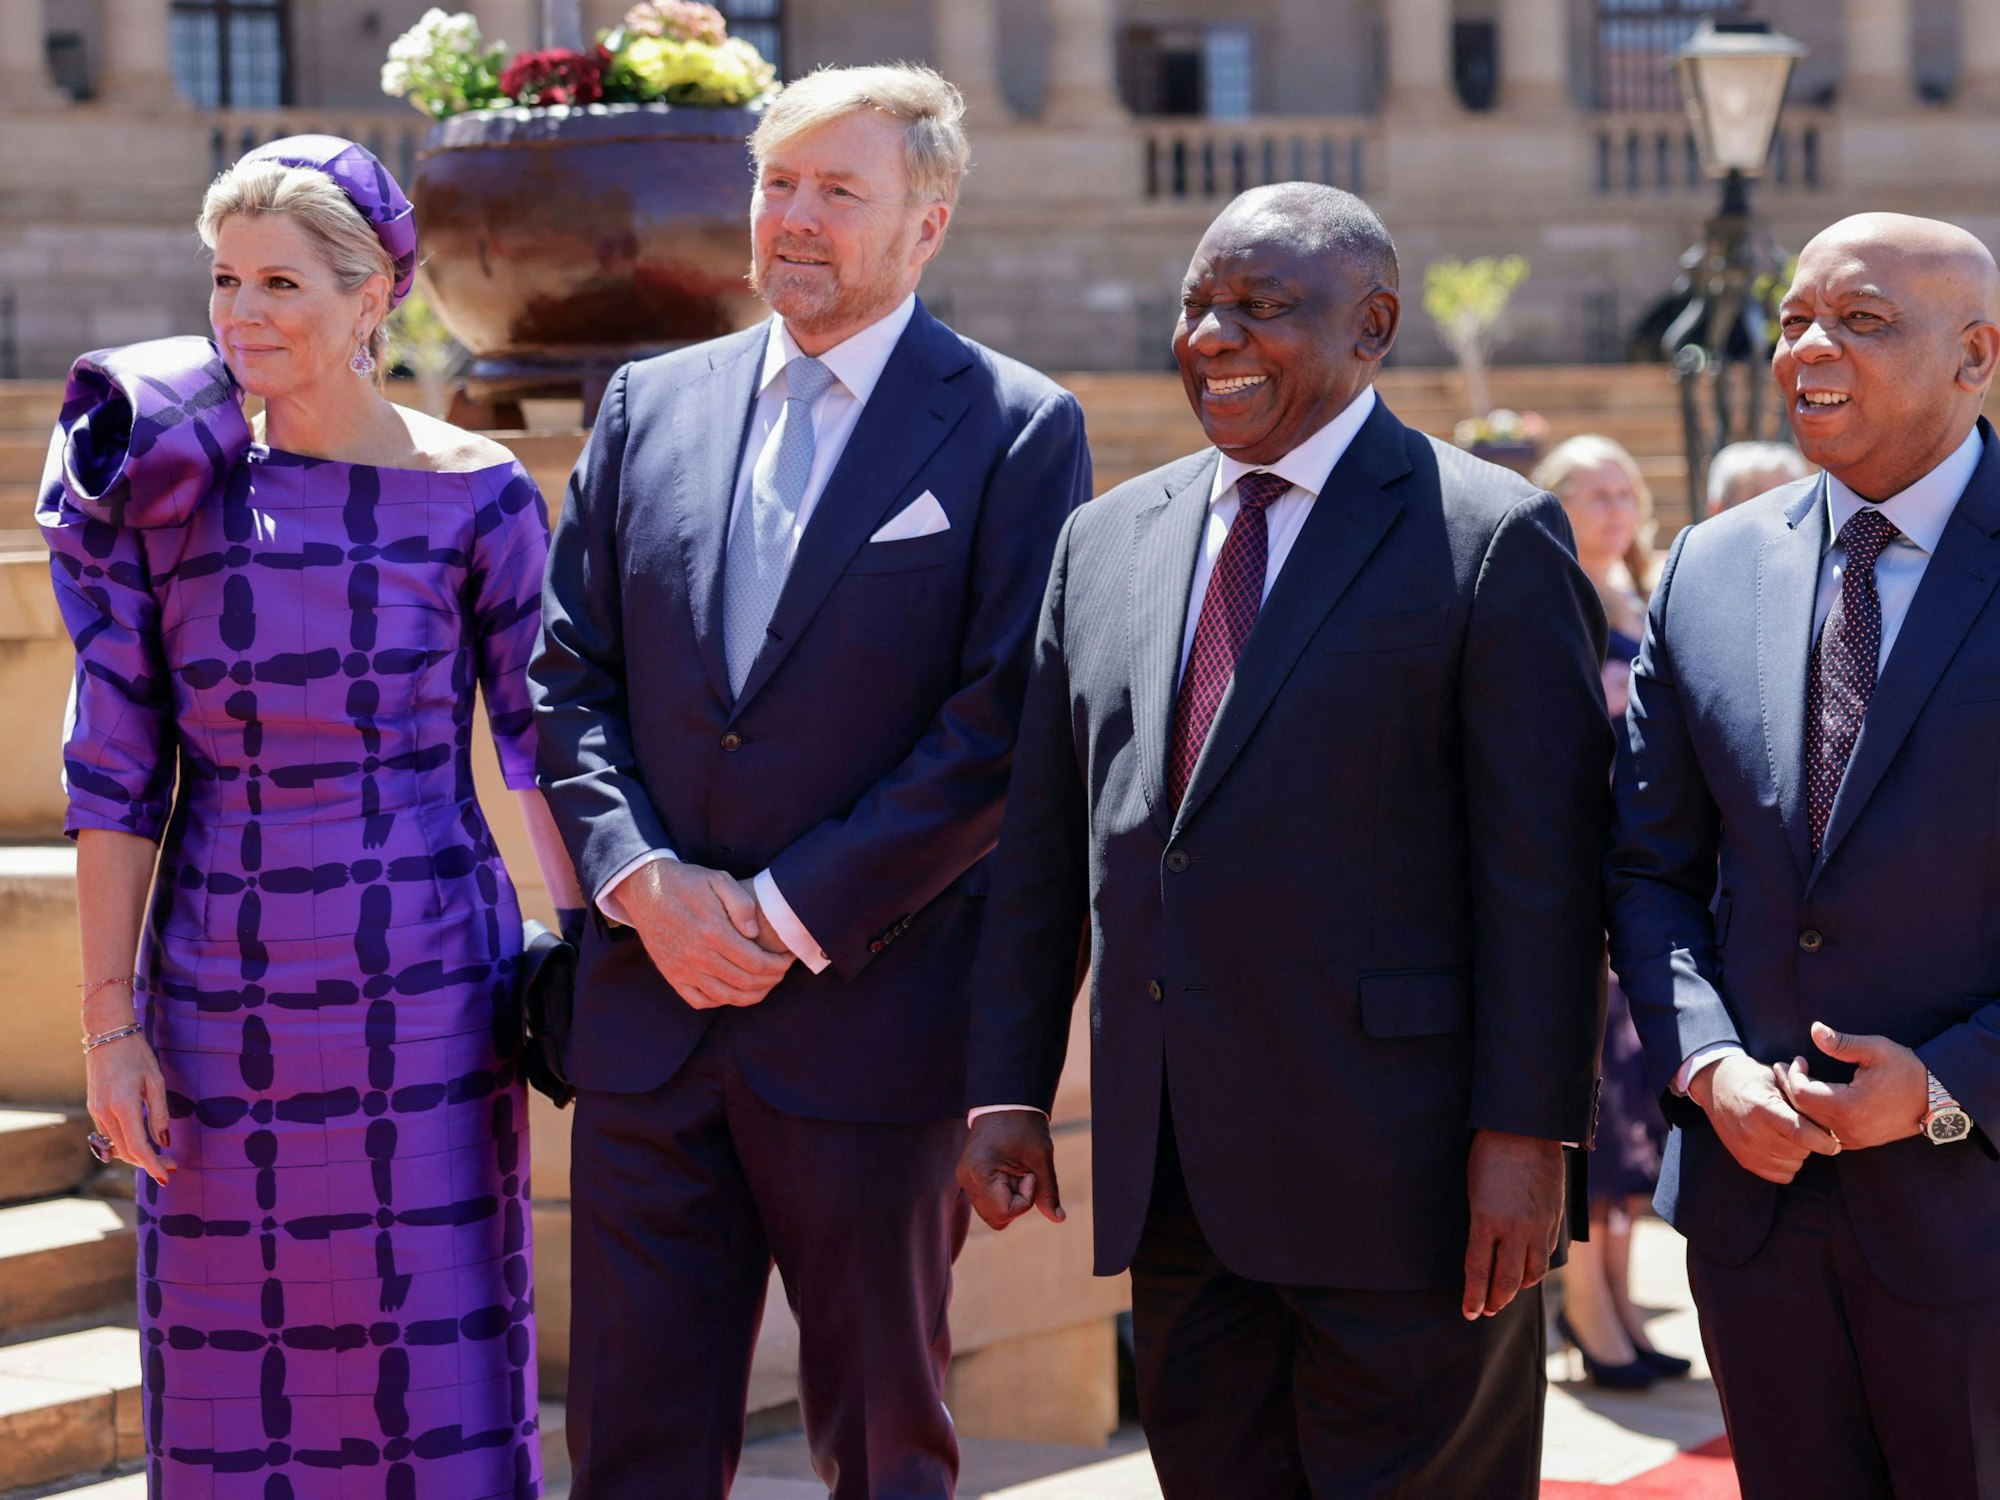 Die niederländische Königin Maxima (l) und der niederländische König Willem-Alexander (2. l) unterhalten sich mit dem südafrikanischen Präsidenten Cyril Ramaphosa (2. r) und dem südafrikanischen Elektrizitätsminister Kgosientsho Ramokgopa (r) während ihres Staatsbesuchs in Südafrika.